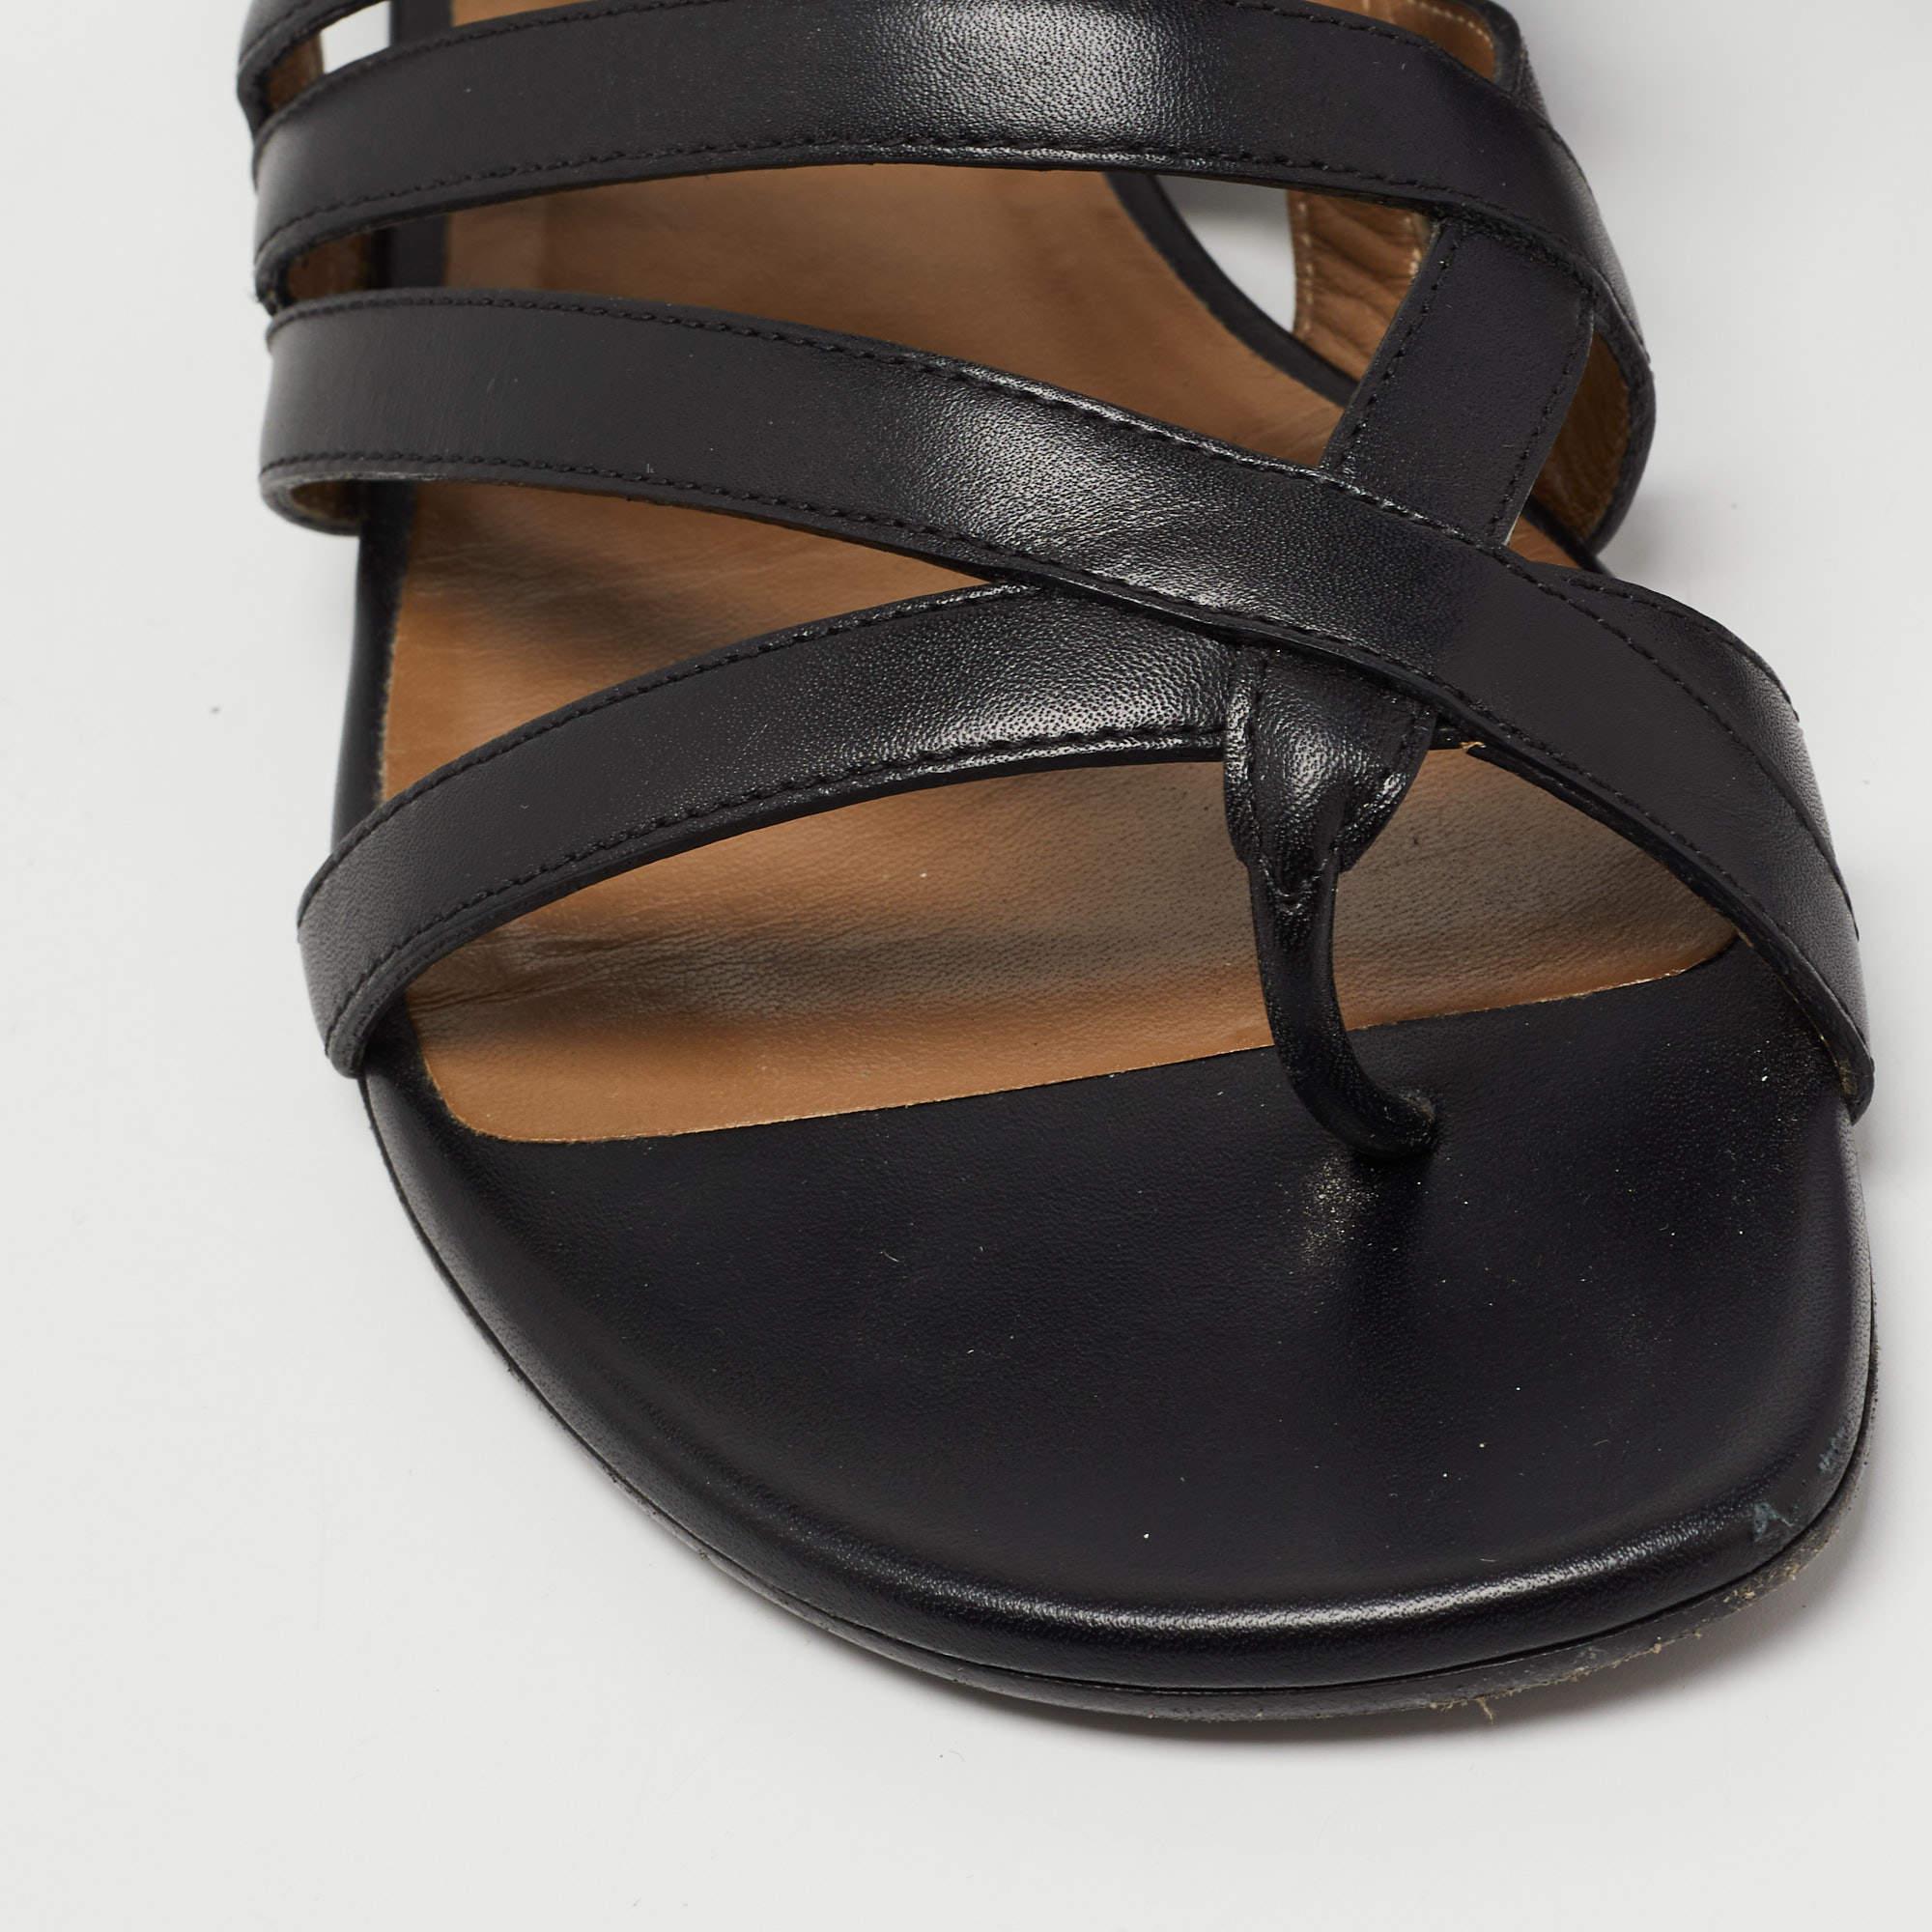 Hermes Black Leather Transat Slingback Sandals Size 37.5 3